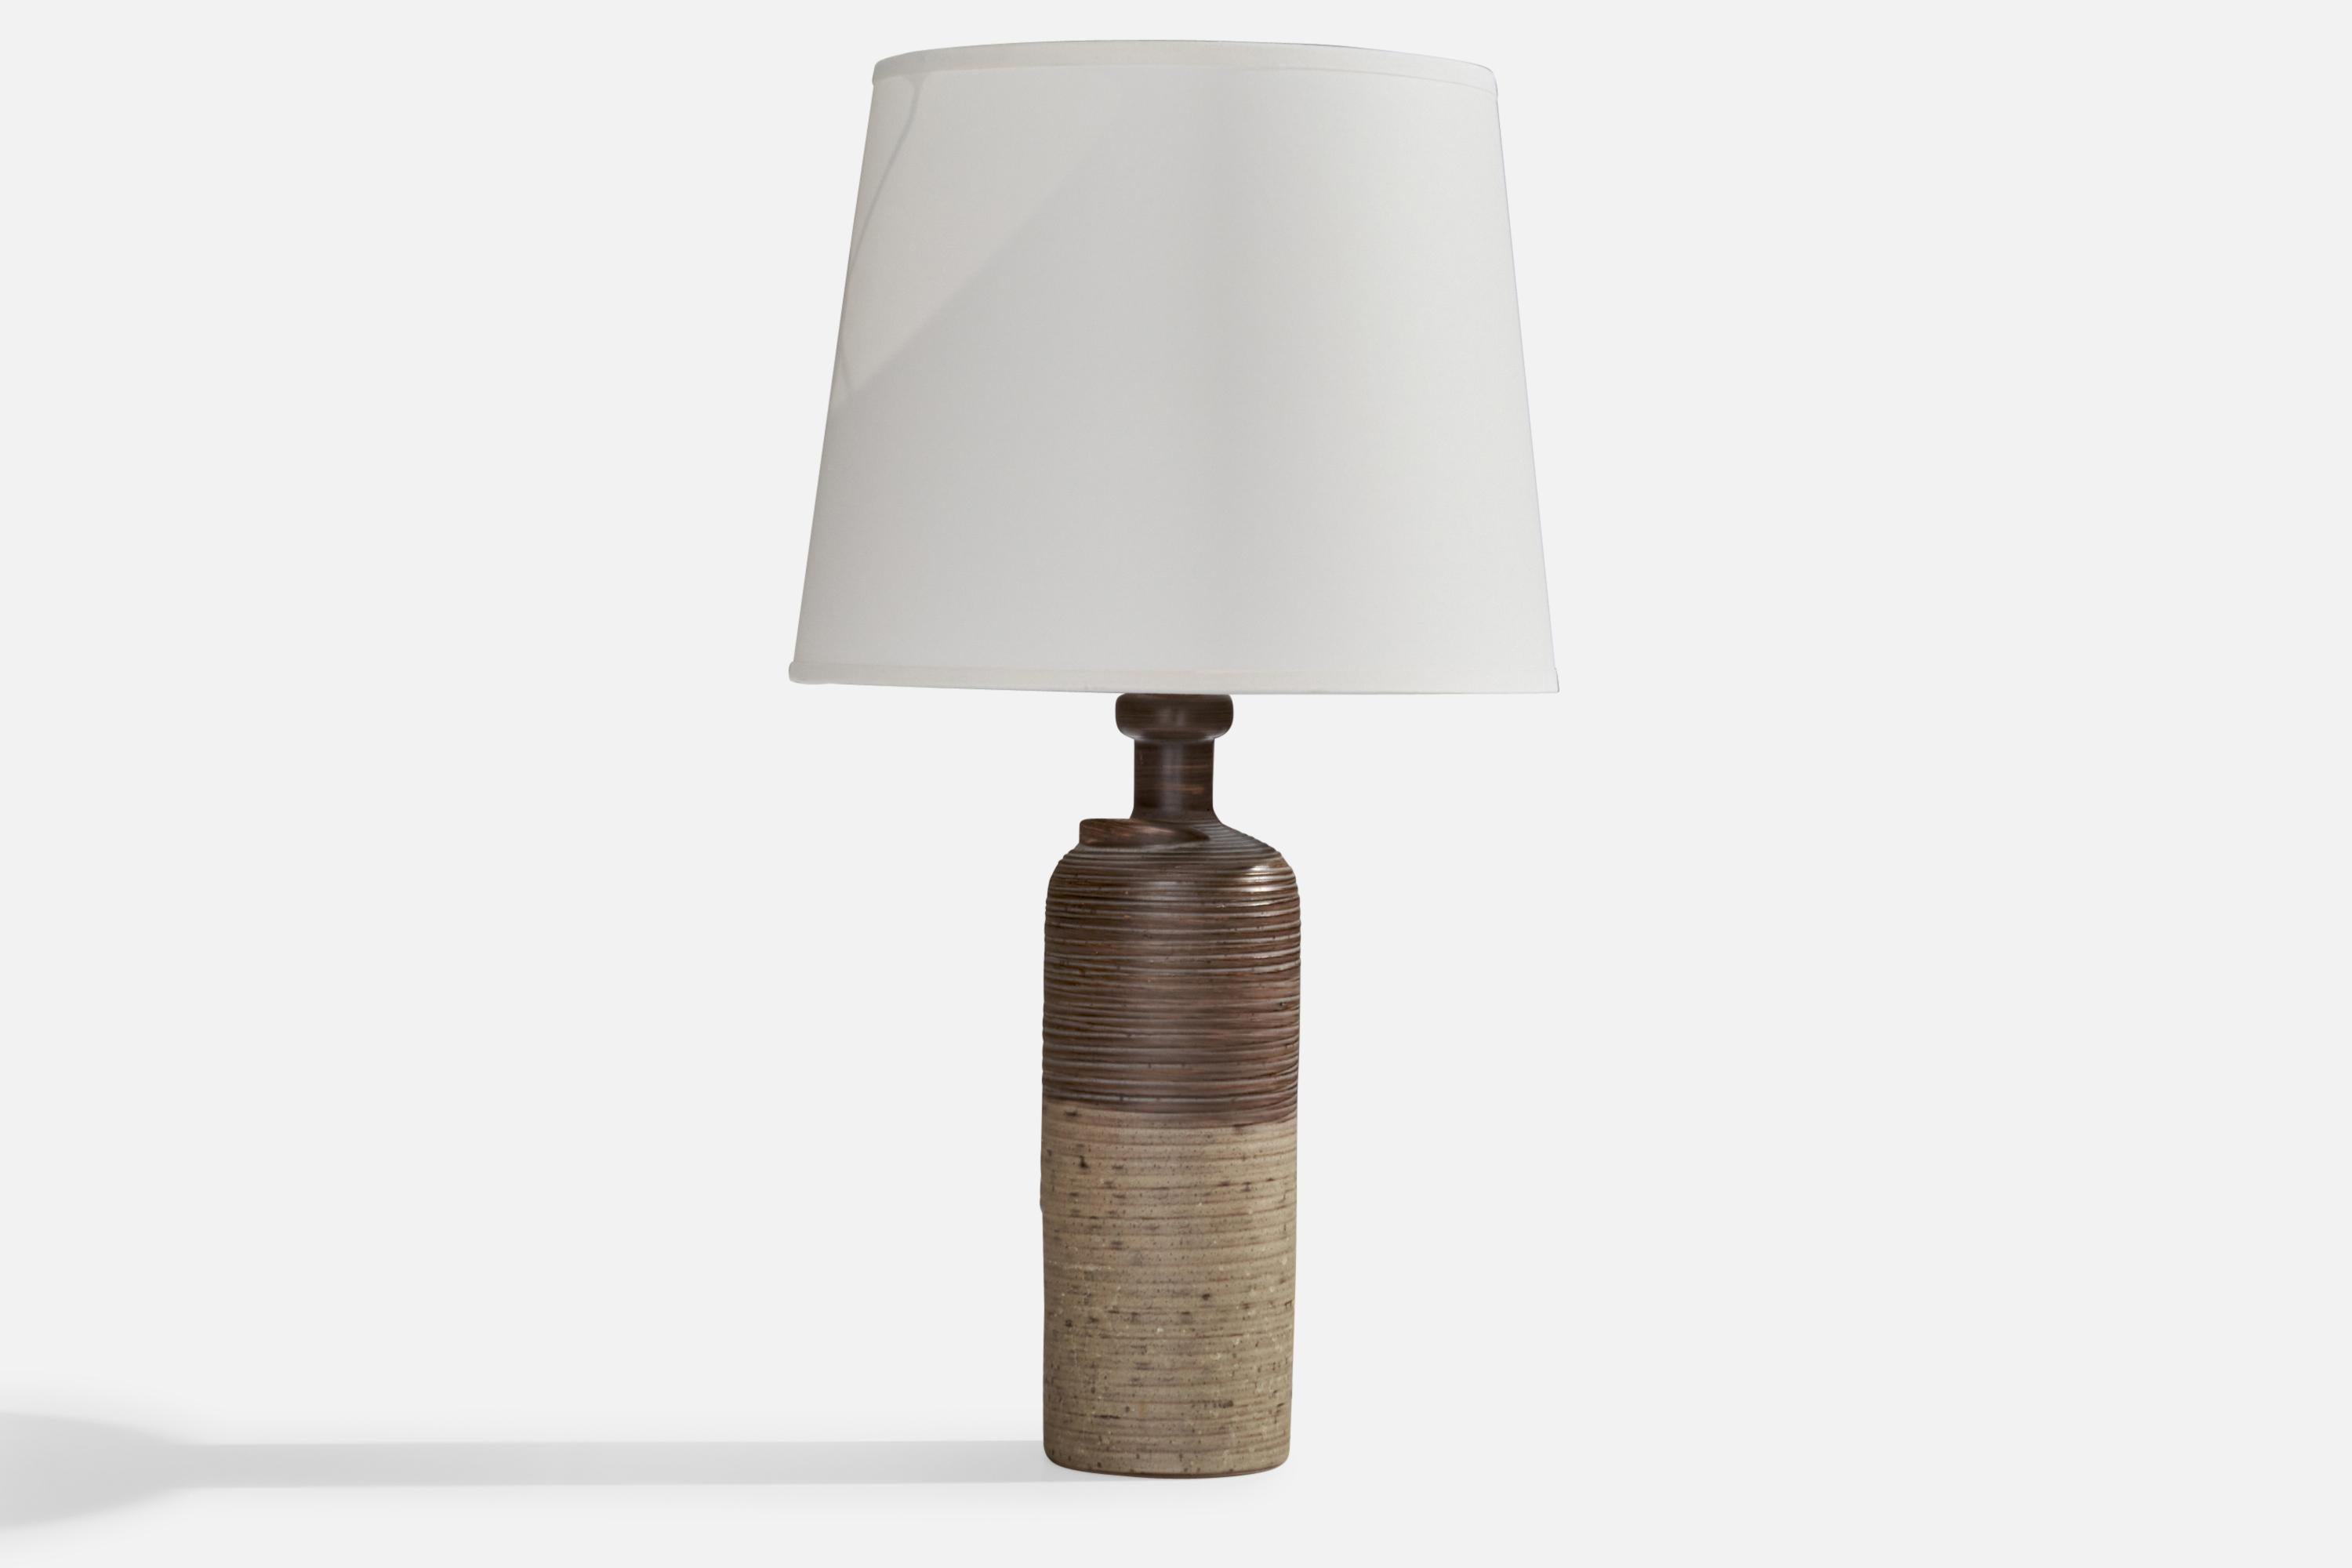 Lampe de table en céramique incisée, émaillée en gris, conçue par Thomas Hellström et produite par Nittsjö, Suède, c.C. 1960.

Dimensions de la lampe (pouces) : 12.65